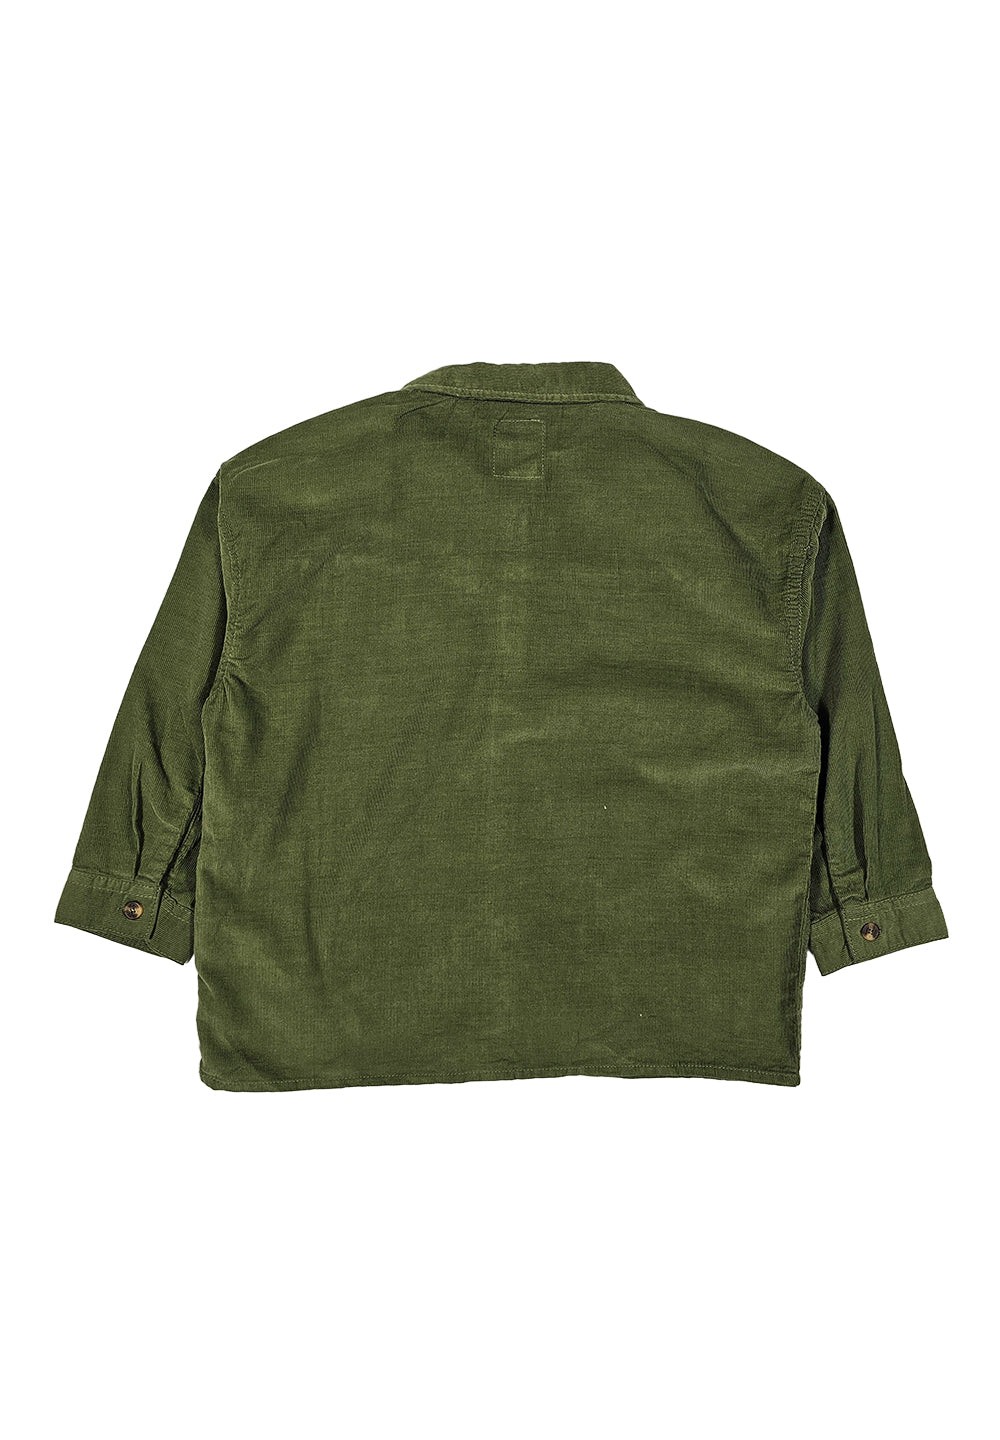 Green velvet shirt for boys